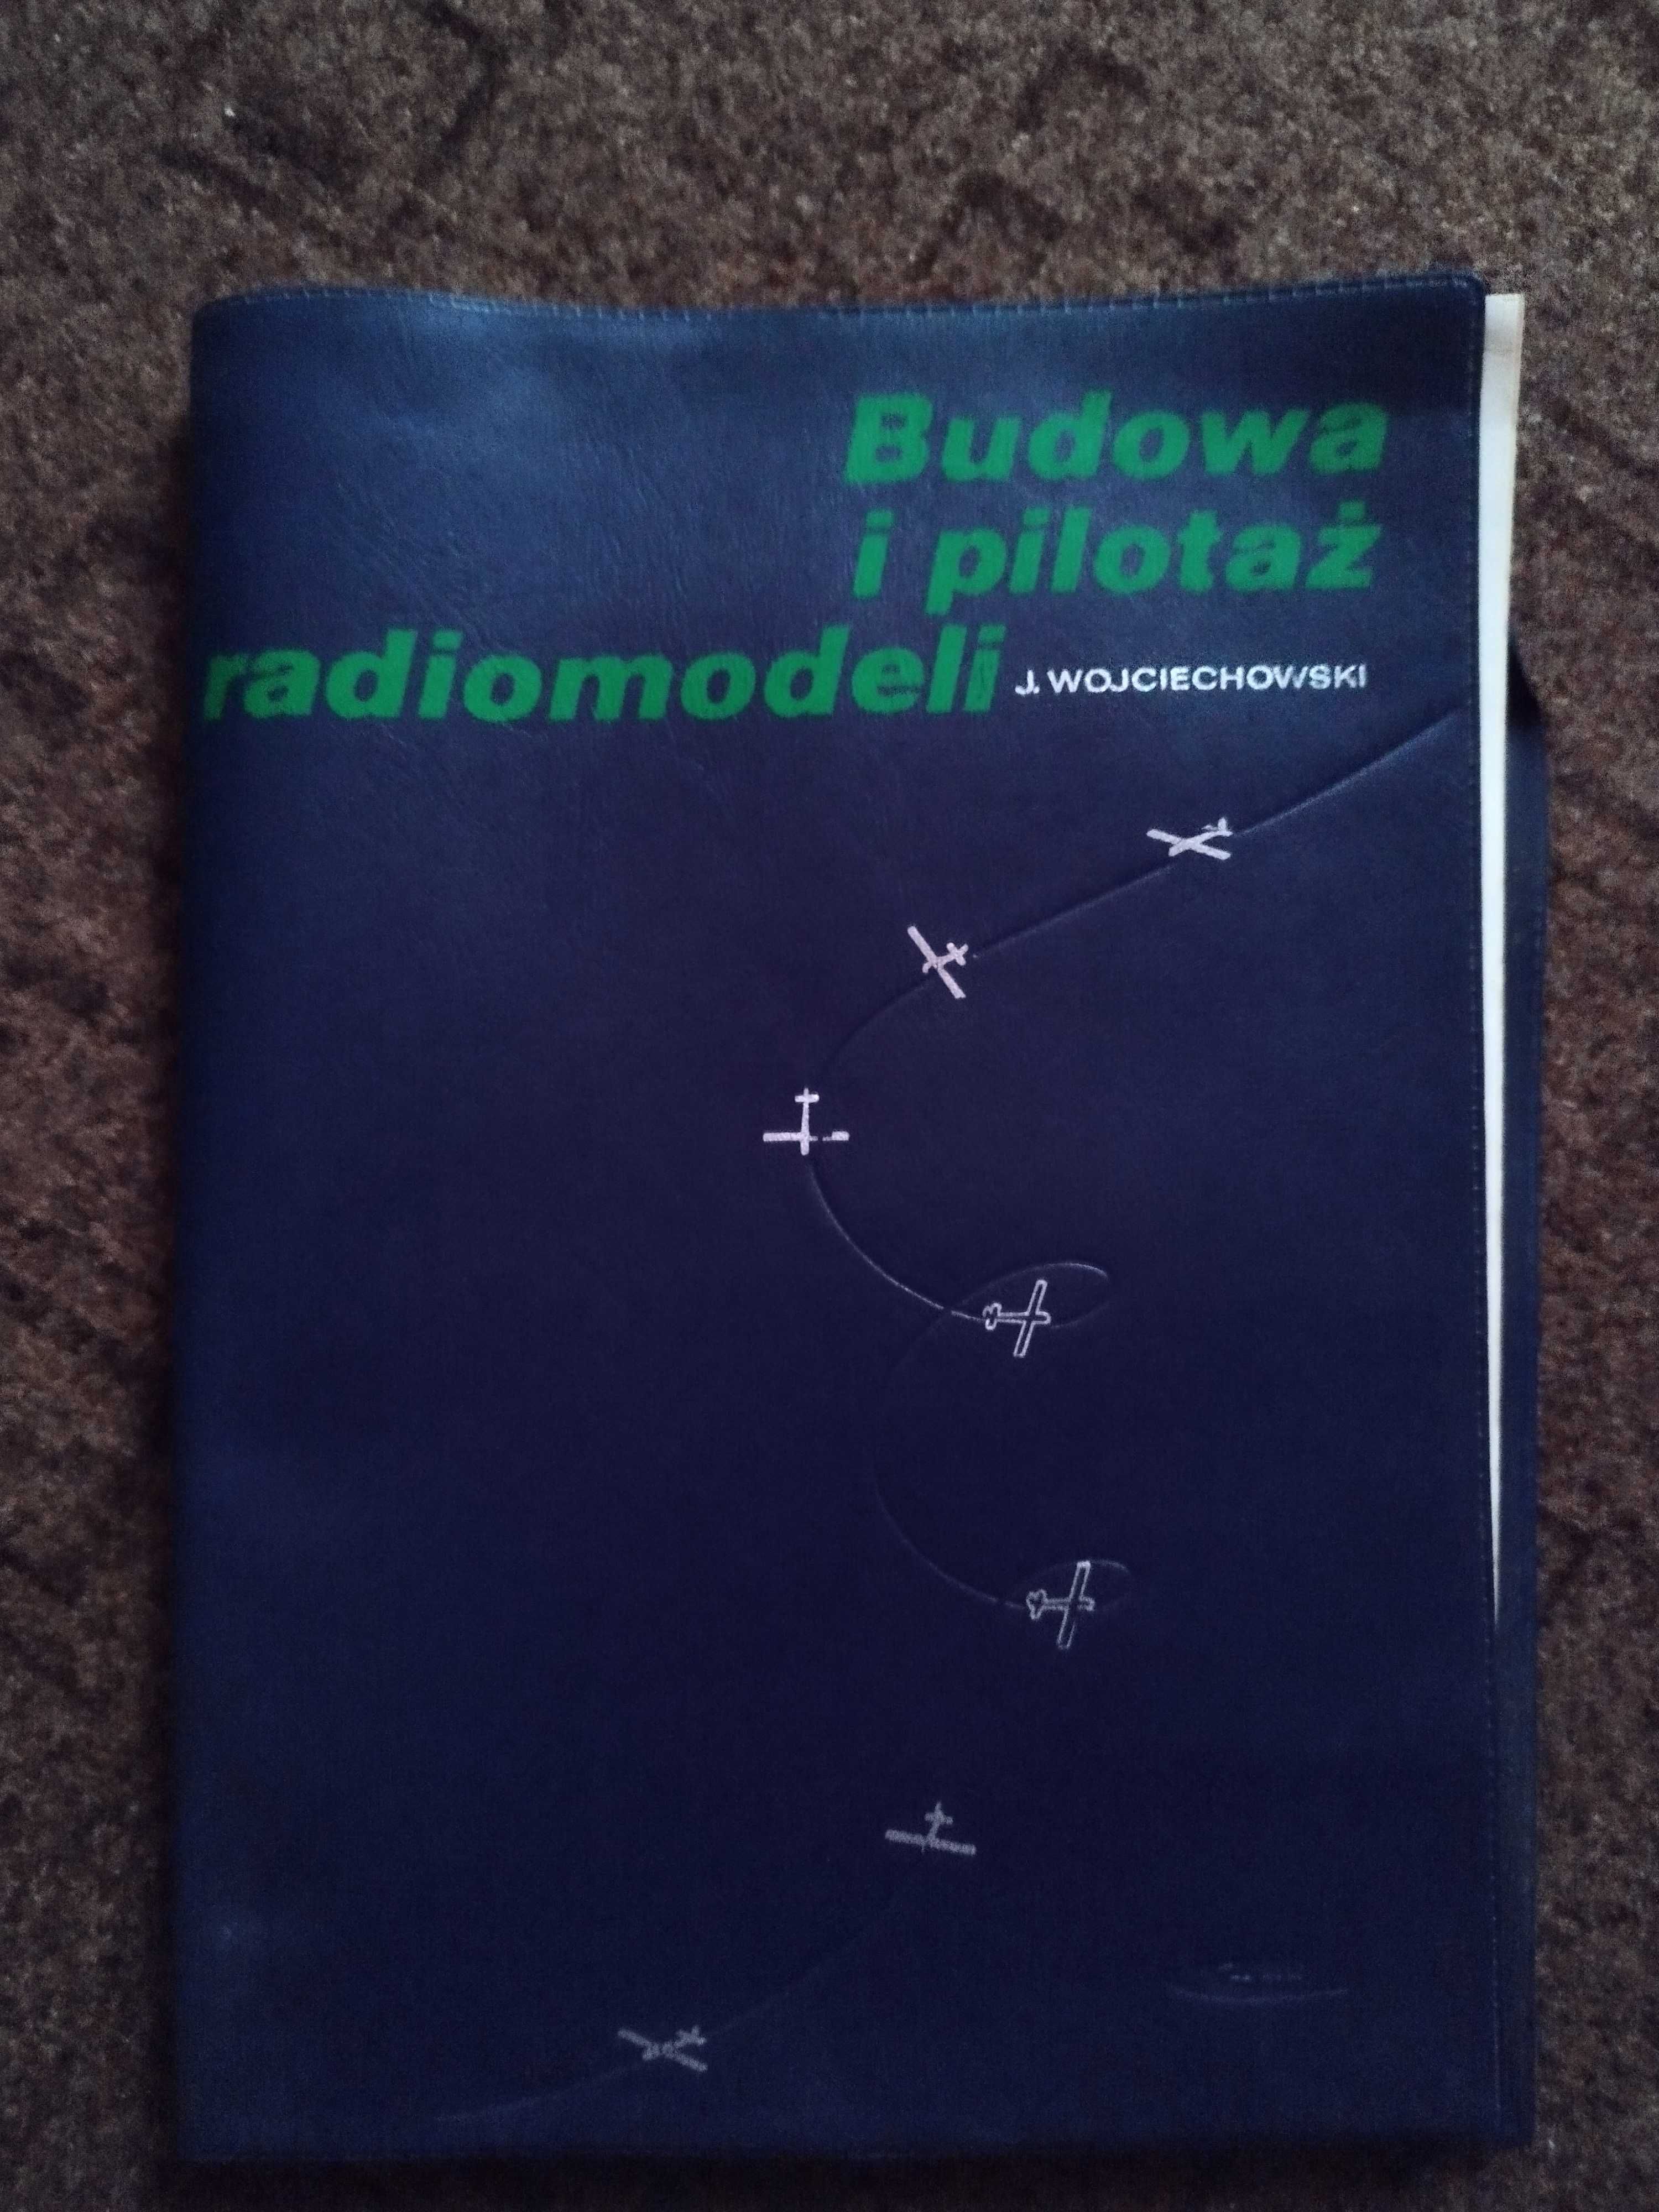 Książka "Budowa i pilotaż radiomodeli" Wojciechowski